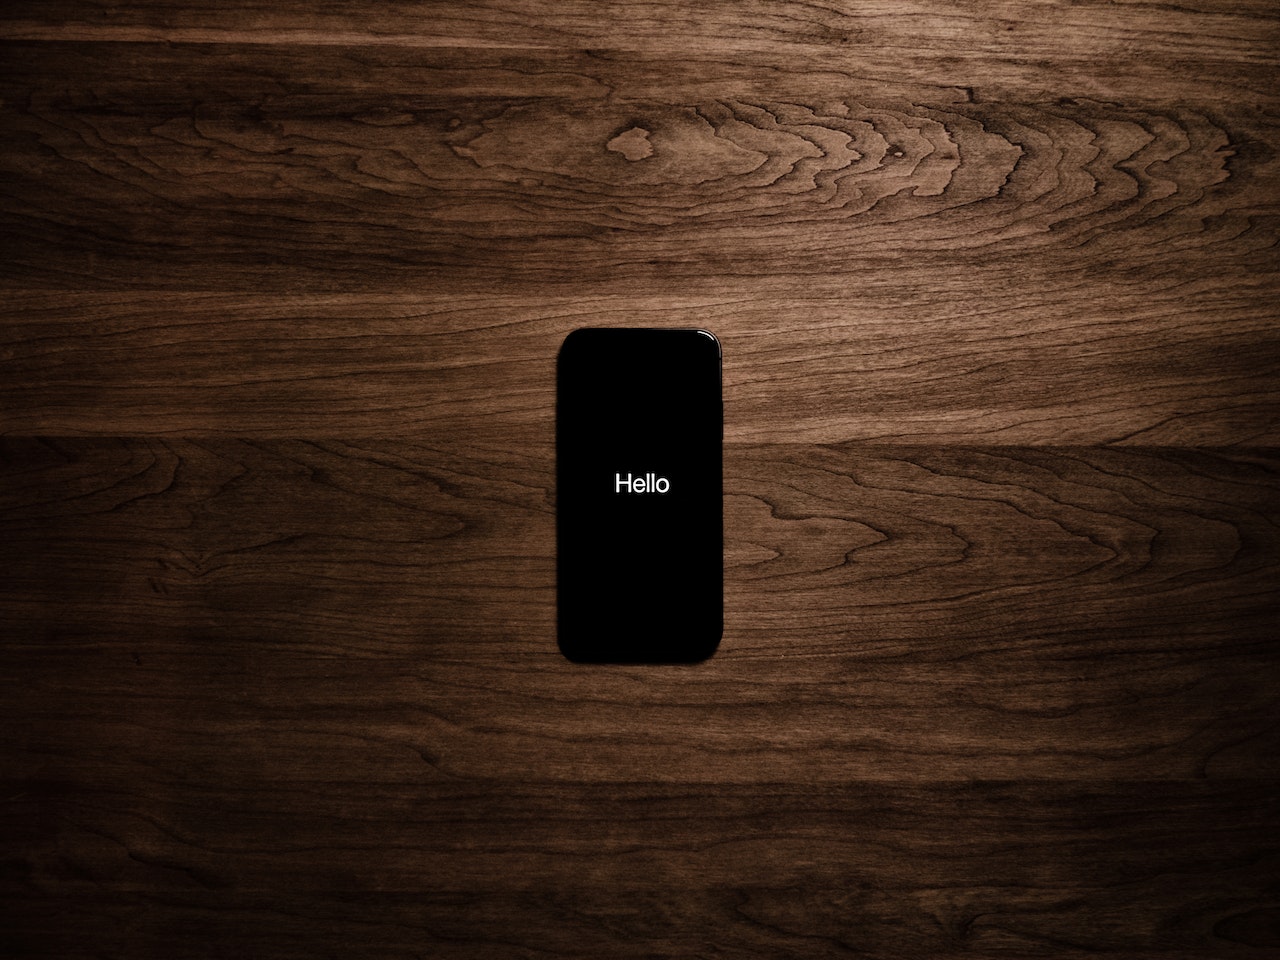 Son model bir iPhone'un yakın çekim görüntüsü. Telefonun ekranında iOS'a özgü uygulama ikonları ve ana menüsü dikkat çekiyor